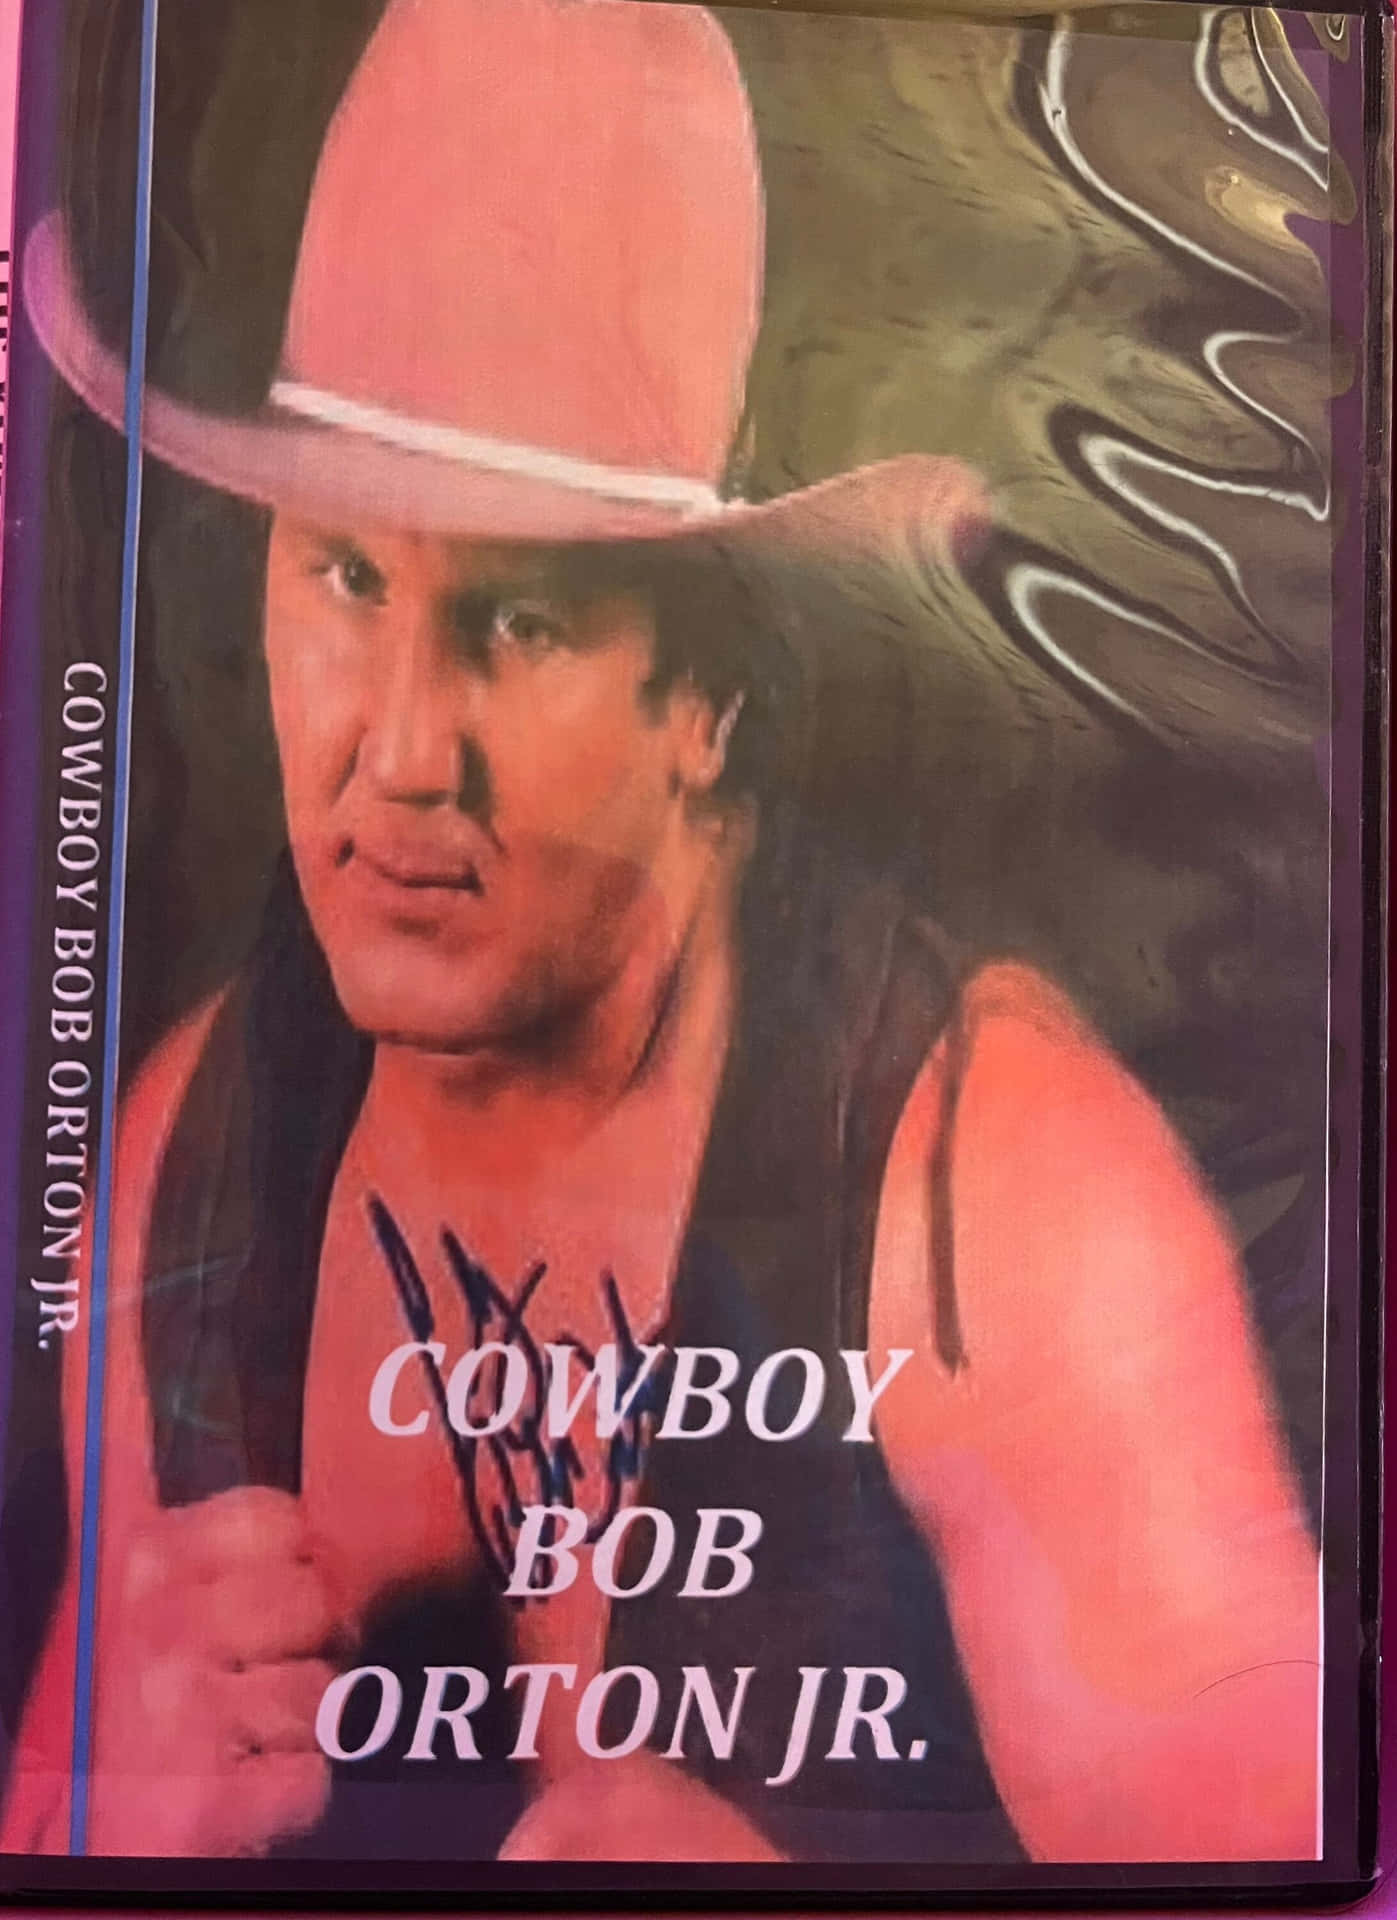 Cowboyhat Bob Orton Jr. - Cowbojhatten Bob Orton Jr. Wallpaper